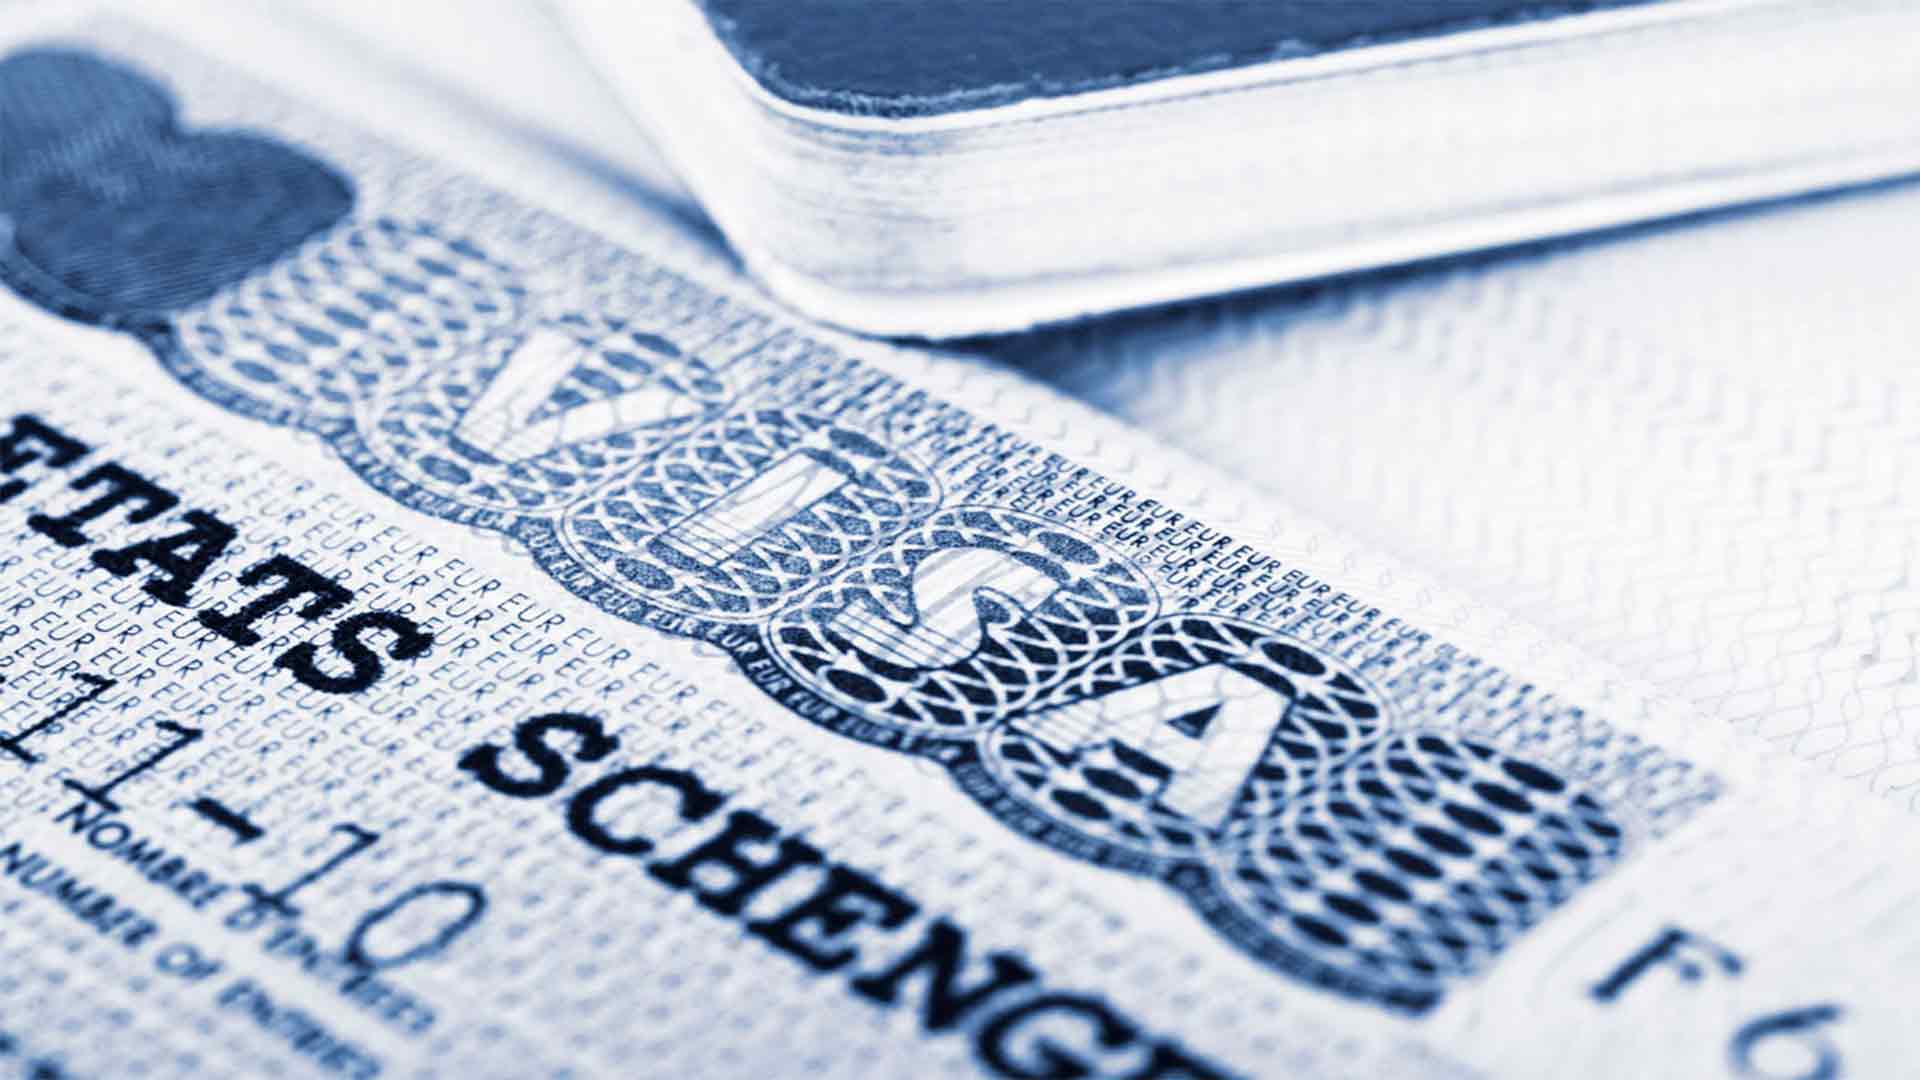  Виза Шенген